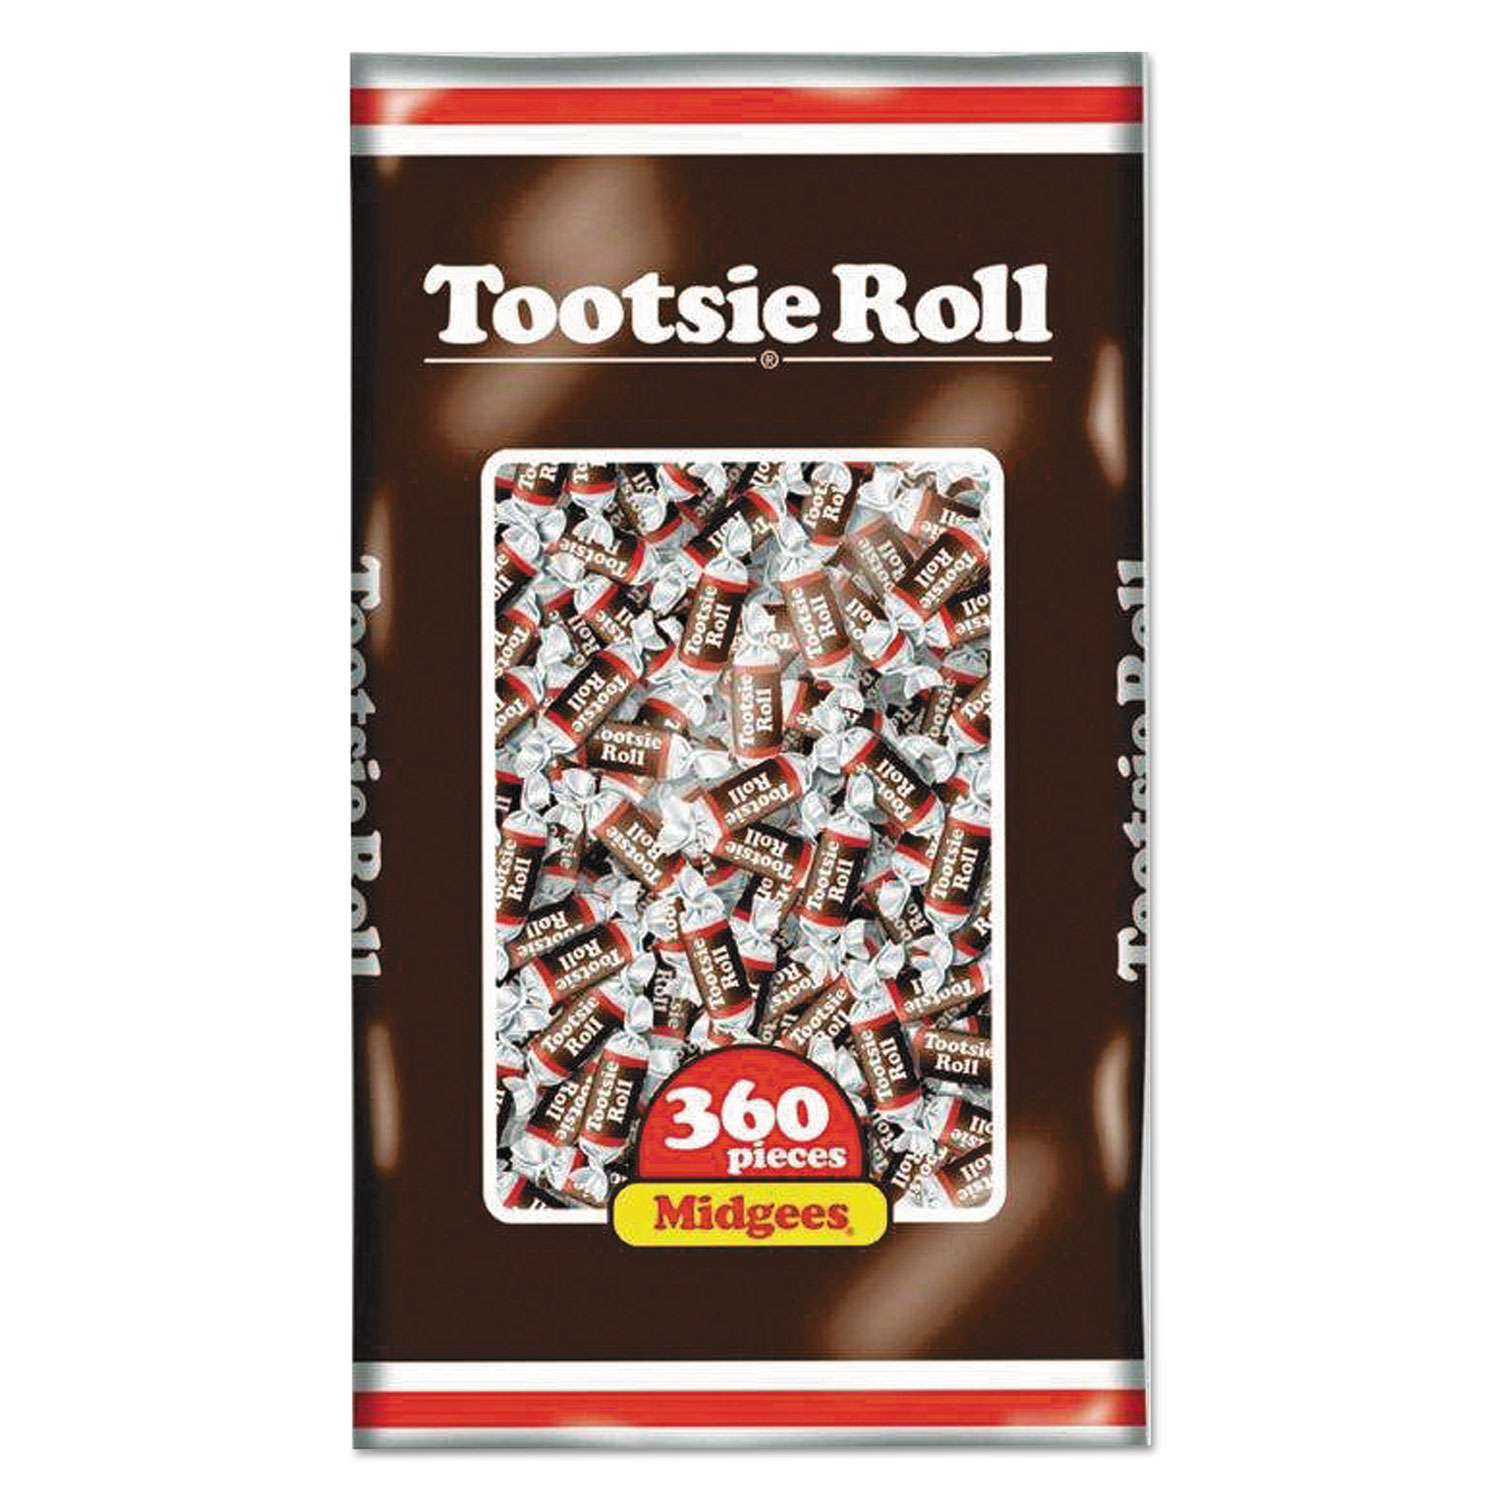 Tootsie Rolls Midgees, Original, 38.8oz Bag, 360 Pieces